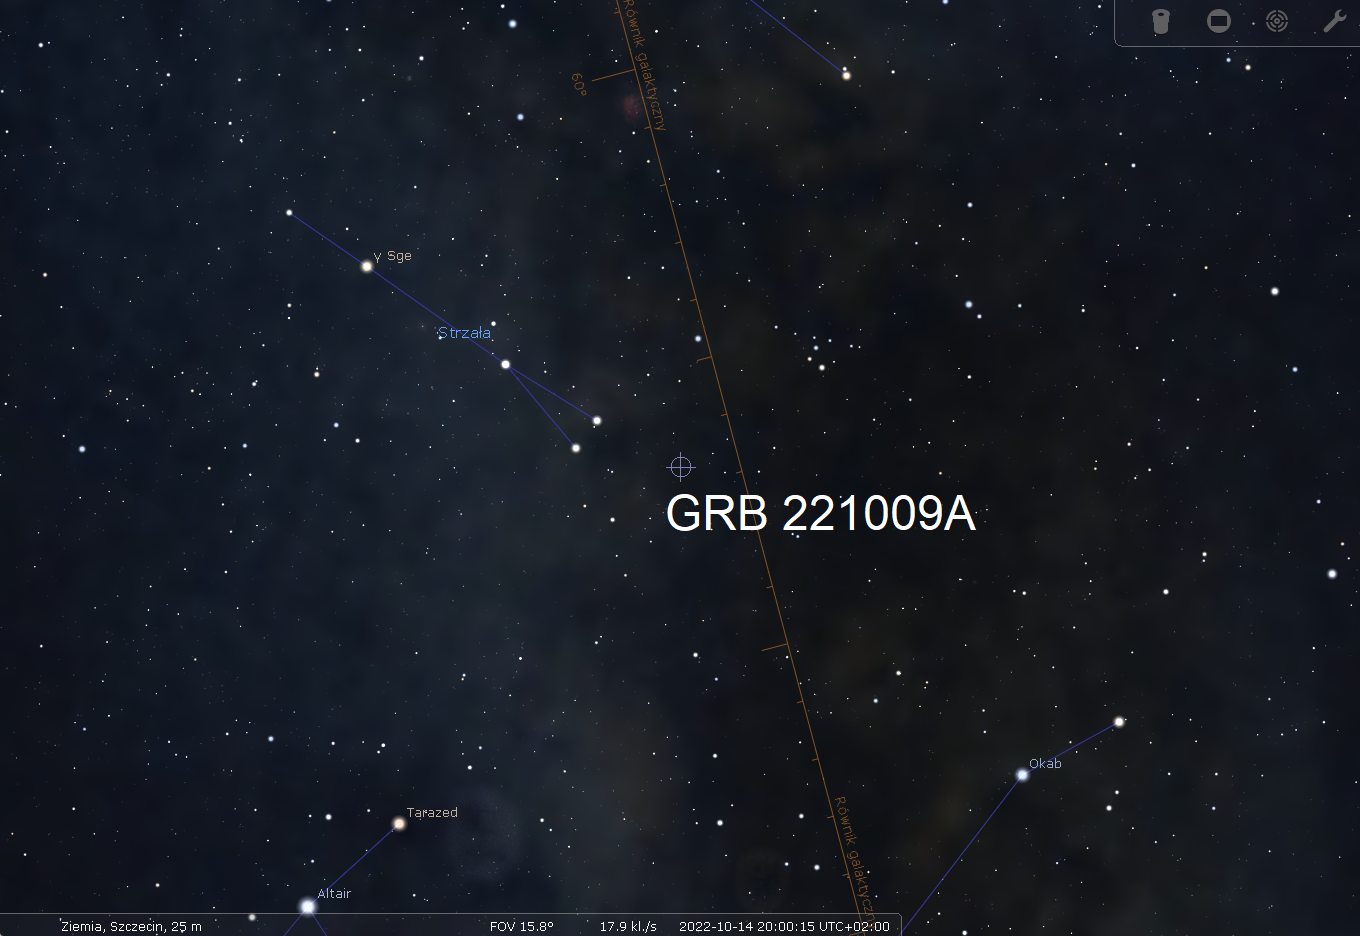 Rozbłysku gamma GRB221009A nastąpił niedaleko płaszczyzny Drogi Mlecznej w gwiazdozbiorze Strzały, ale jego pochodzenie jest spoza naszej Galaktyki (odległość ~2,4 miliarda l.św.). Źródło: Stellarium